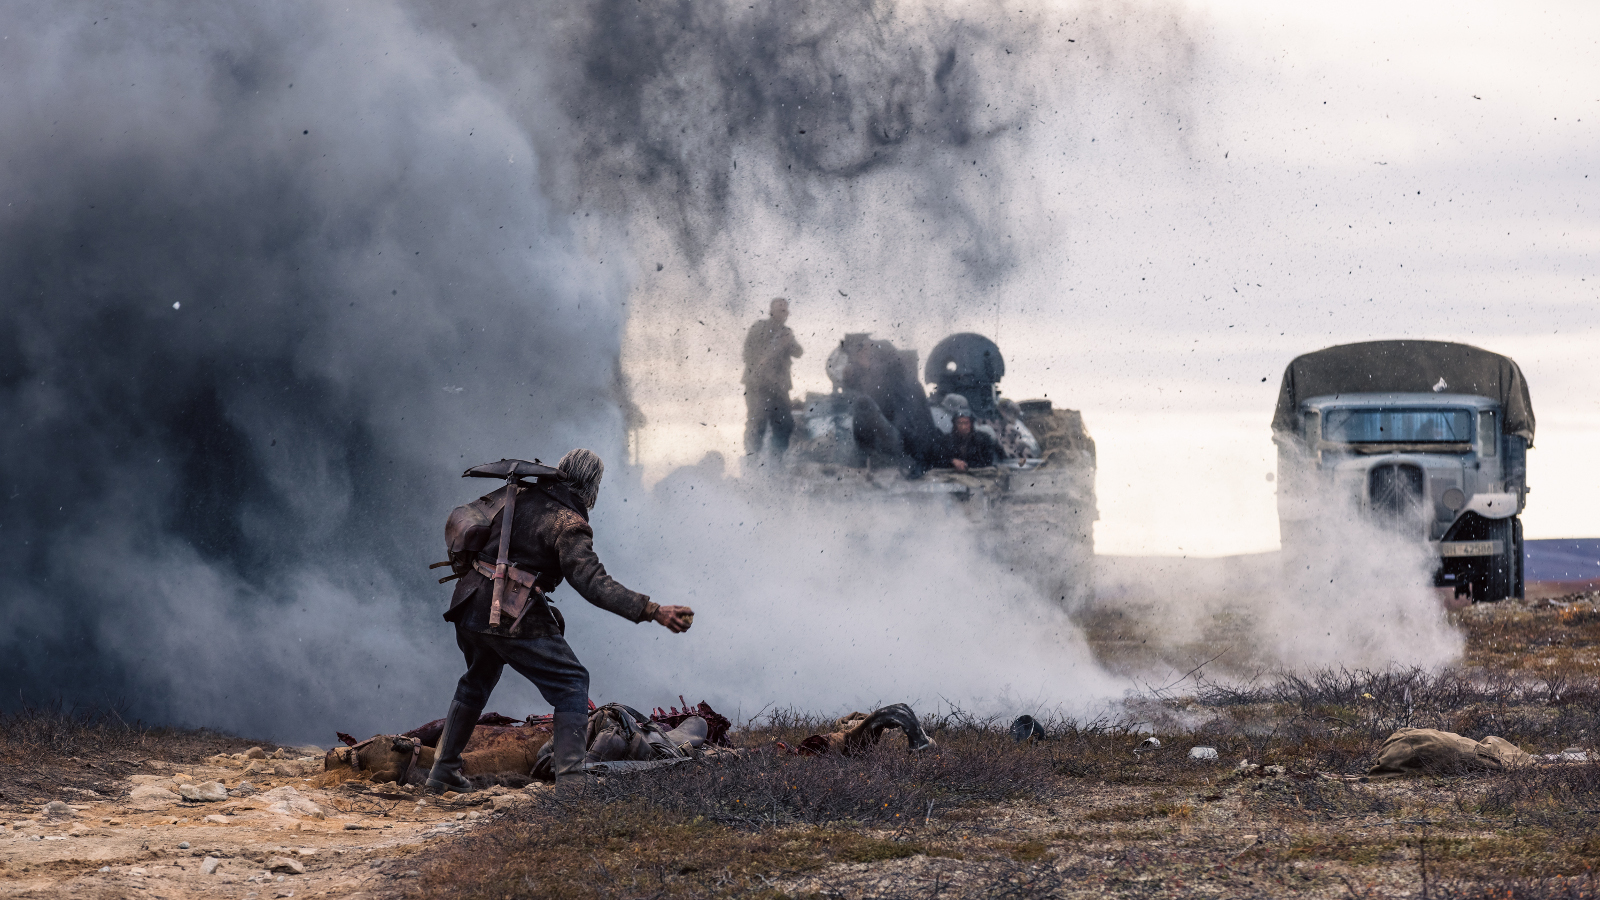 Kuvassa on etualalla kumarassa kulkeva Jorma Tommila ja hänen edessään on savua ja panssarivaunu miehistöineen. Oikealla on miehistönkuljetusauto.